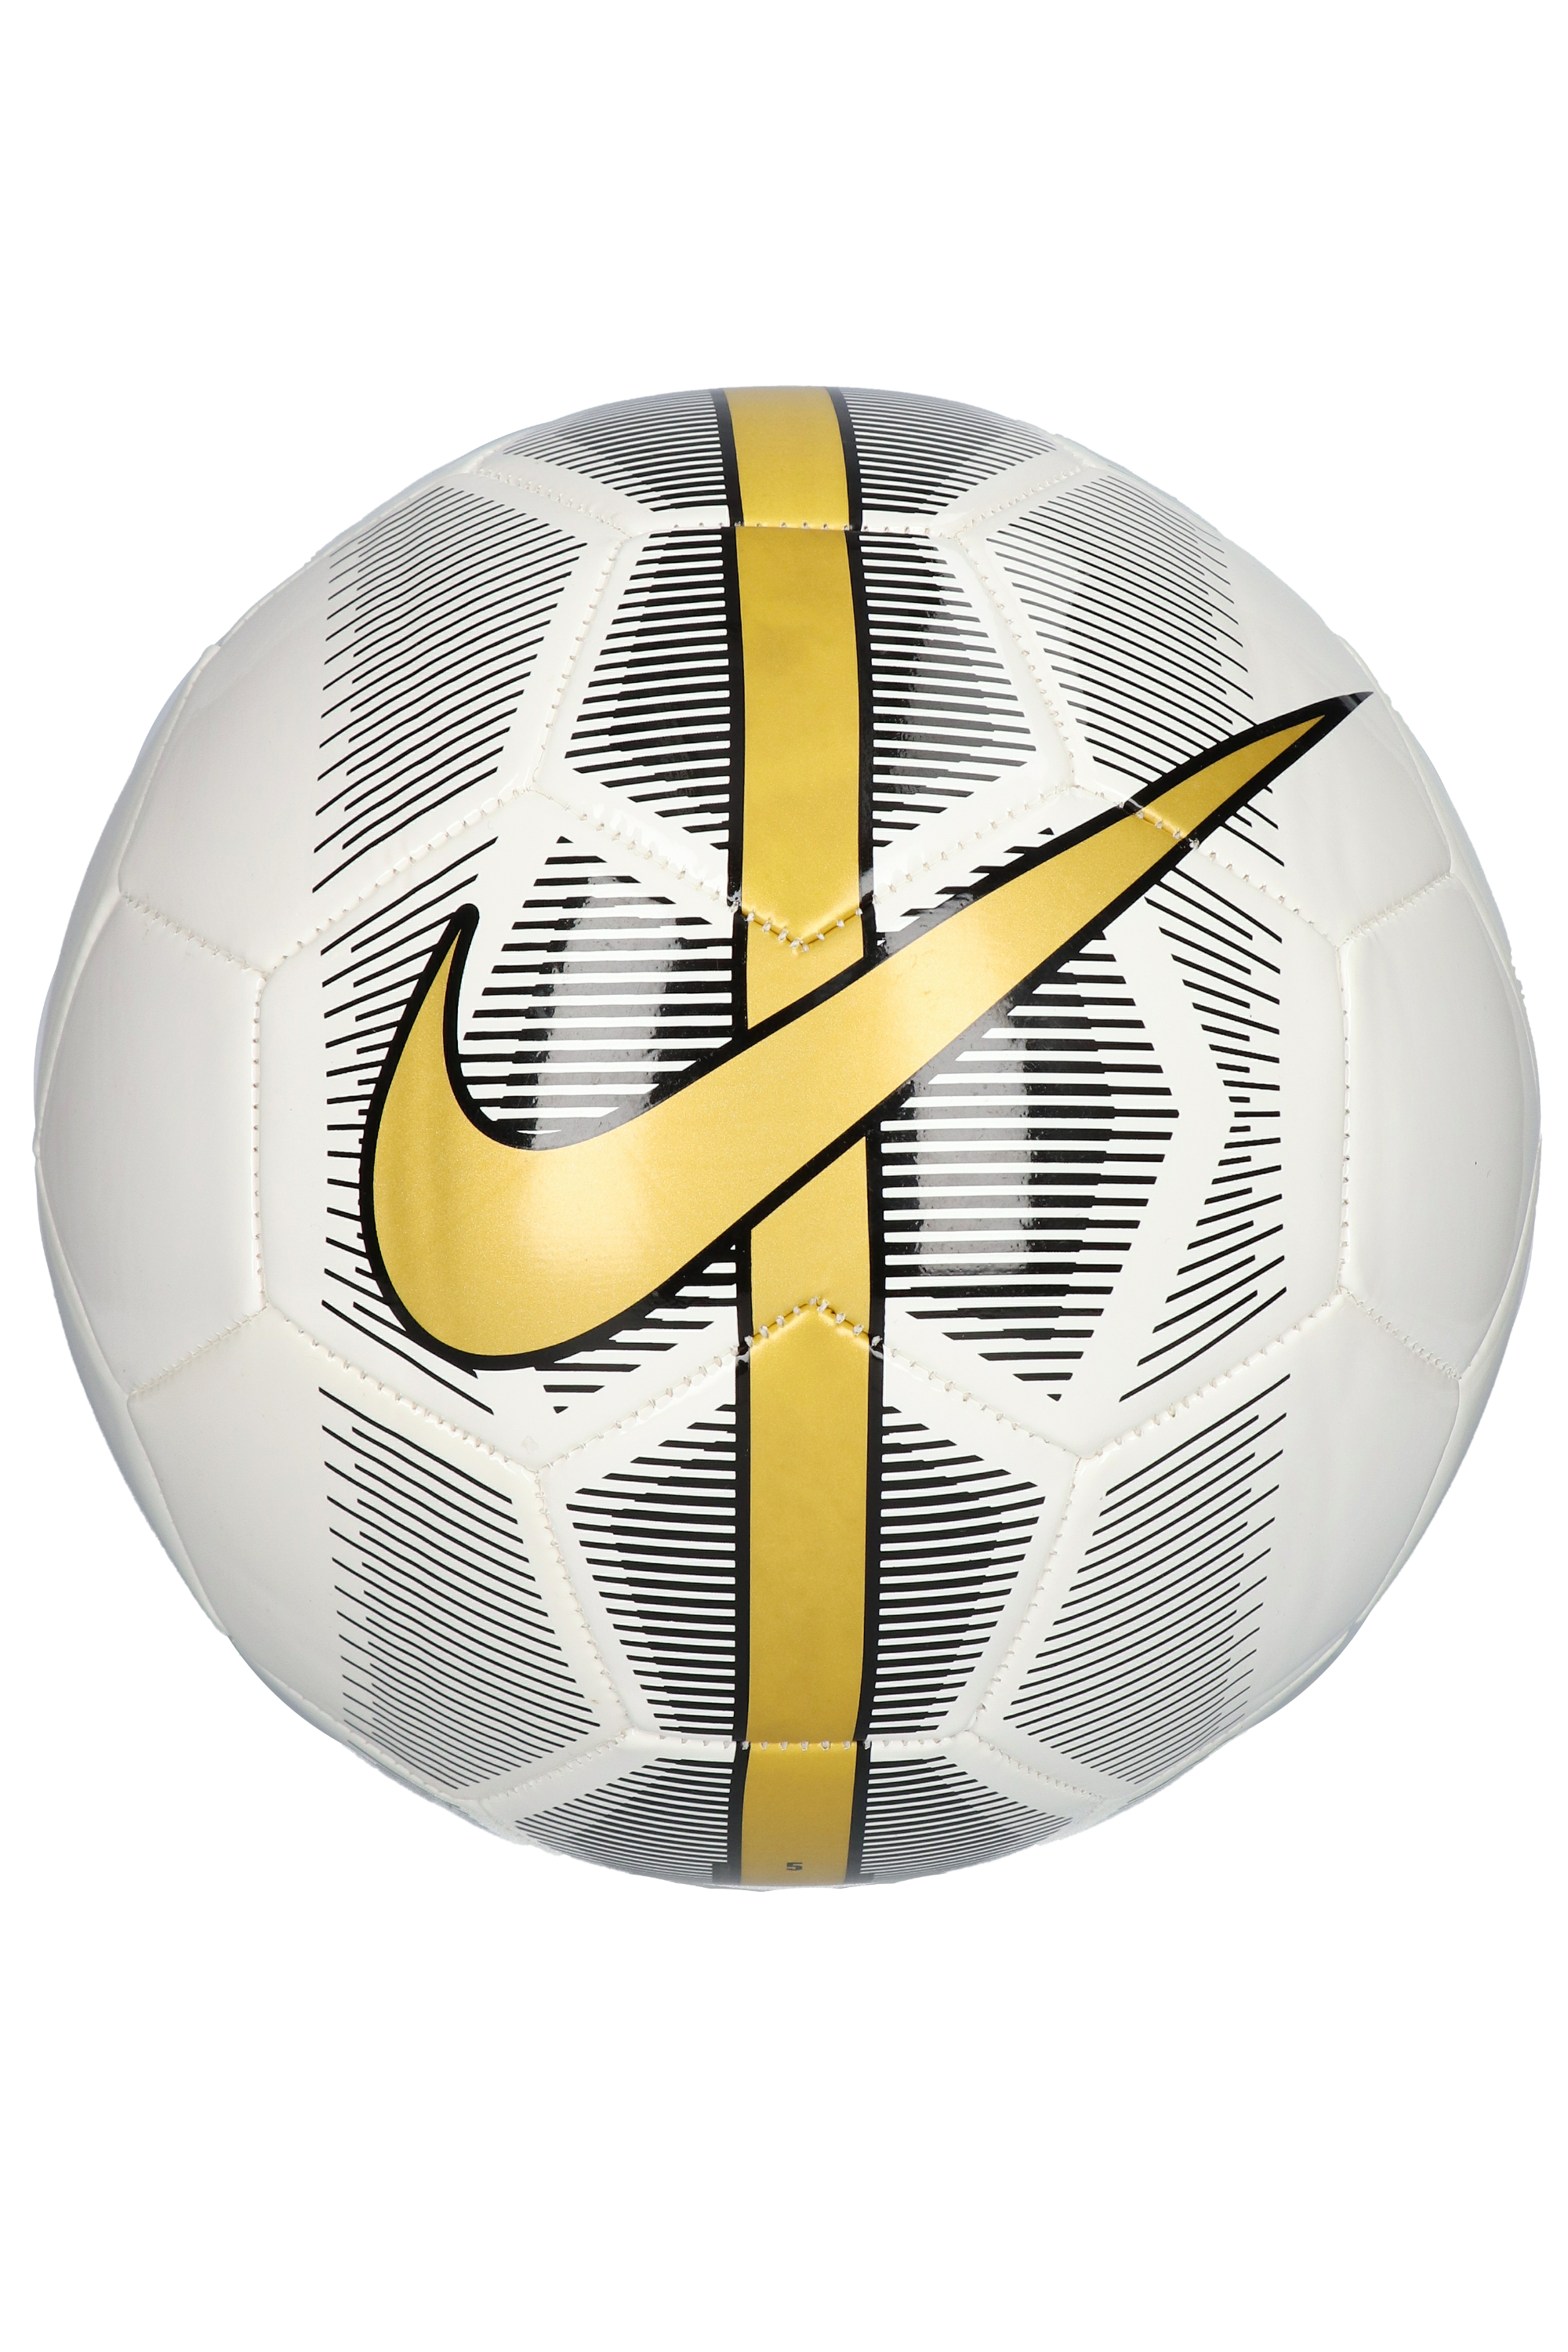 Nike sc com. Мяч найк магия. Мяч найк SC 2933. Желтый мяч найк 190. Мяч найк Mercurial cr7.